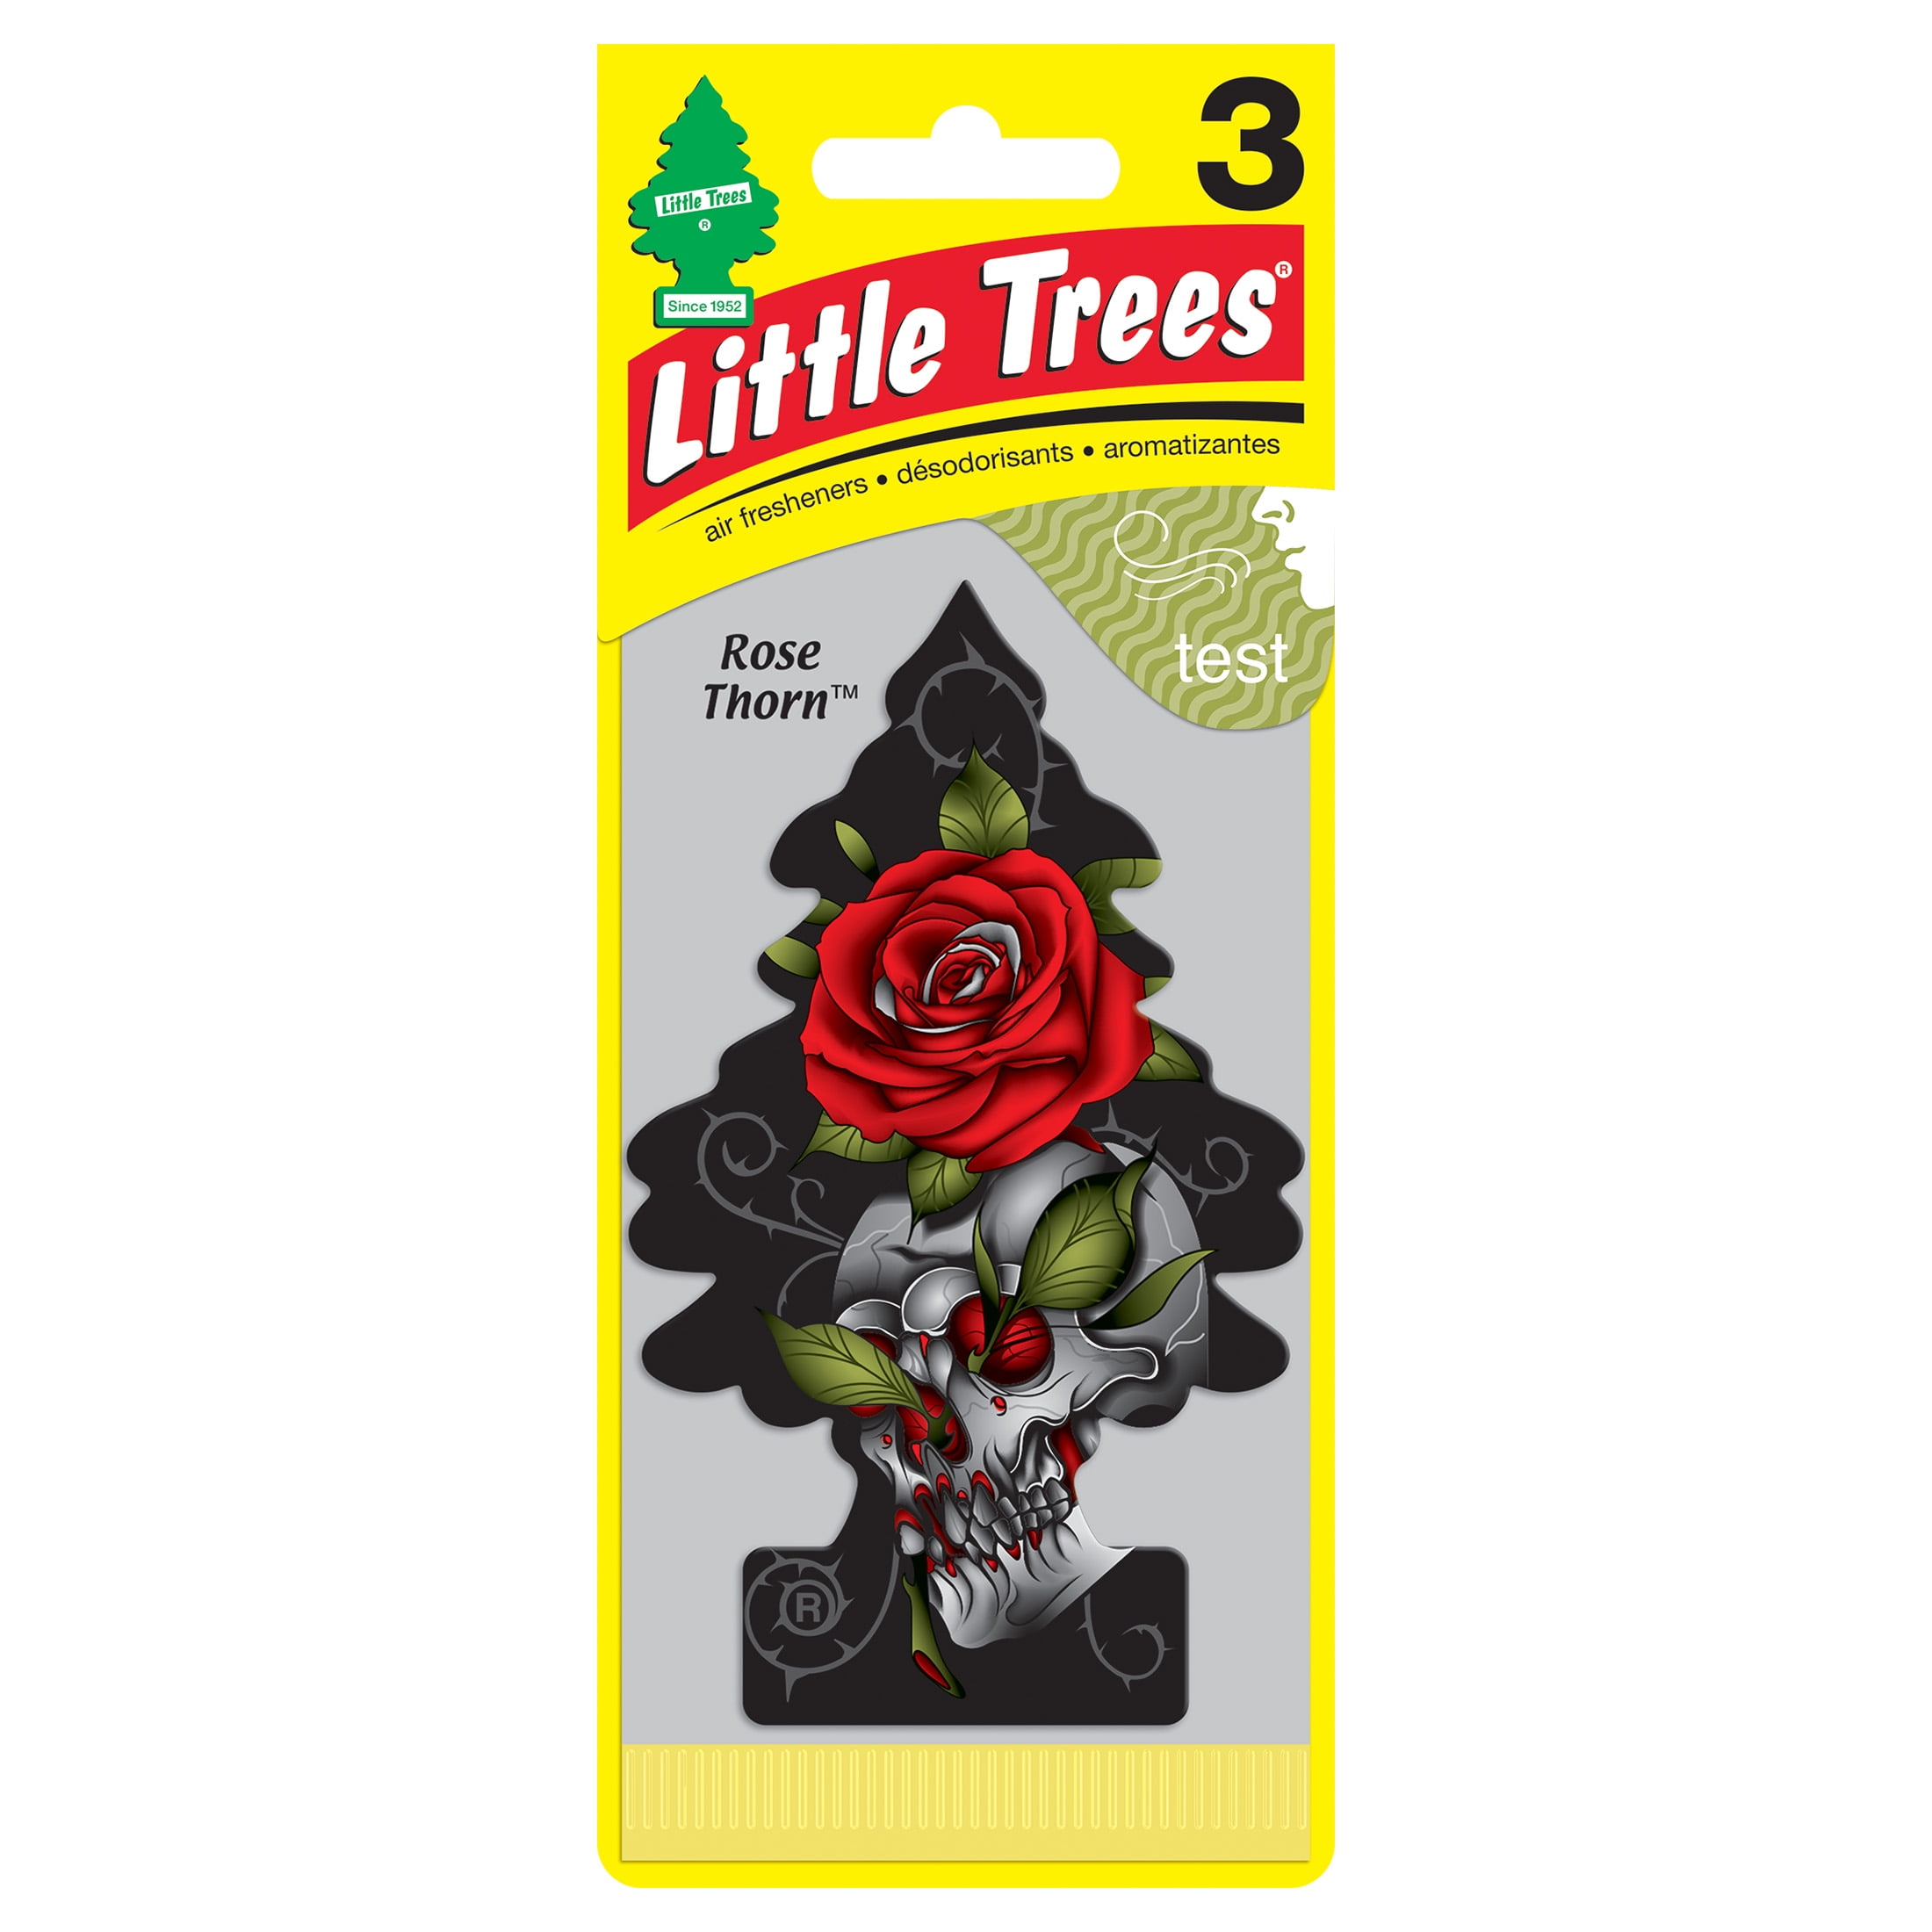 Little Trees Air Freshener Rose Thorn Fragrance 3-Pack